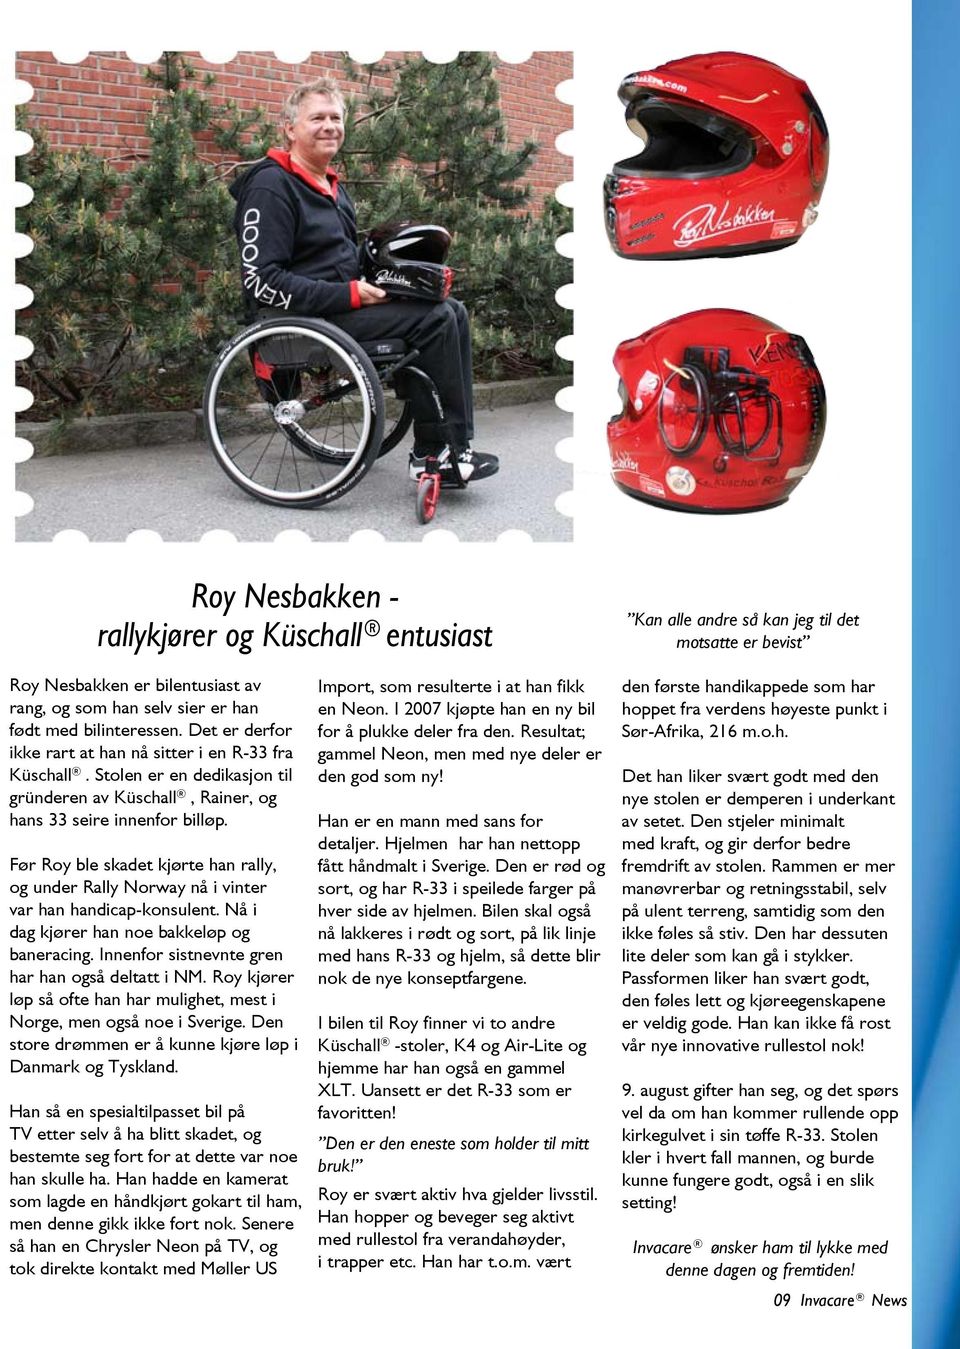 Før Roy ble skadet kjørte han rally, og under Rally Norway nå i vinter var han handicap-konsulent. Nå i dag kjører han noe bakkeløp og baneracing. Innenfor sistnevnte gren har han også deltatt i NM.